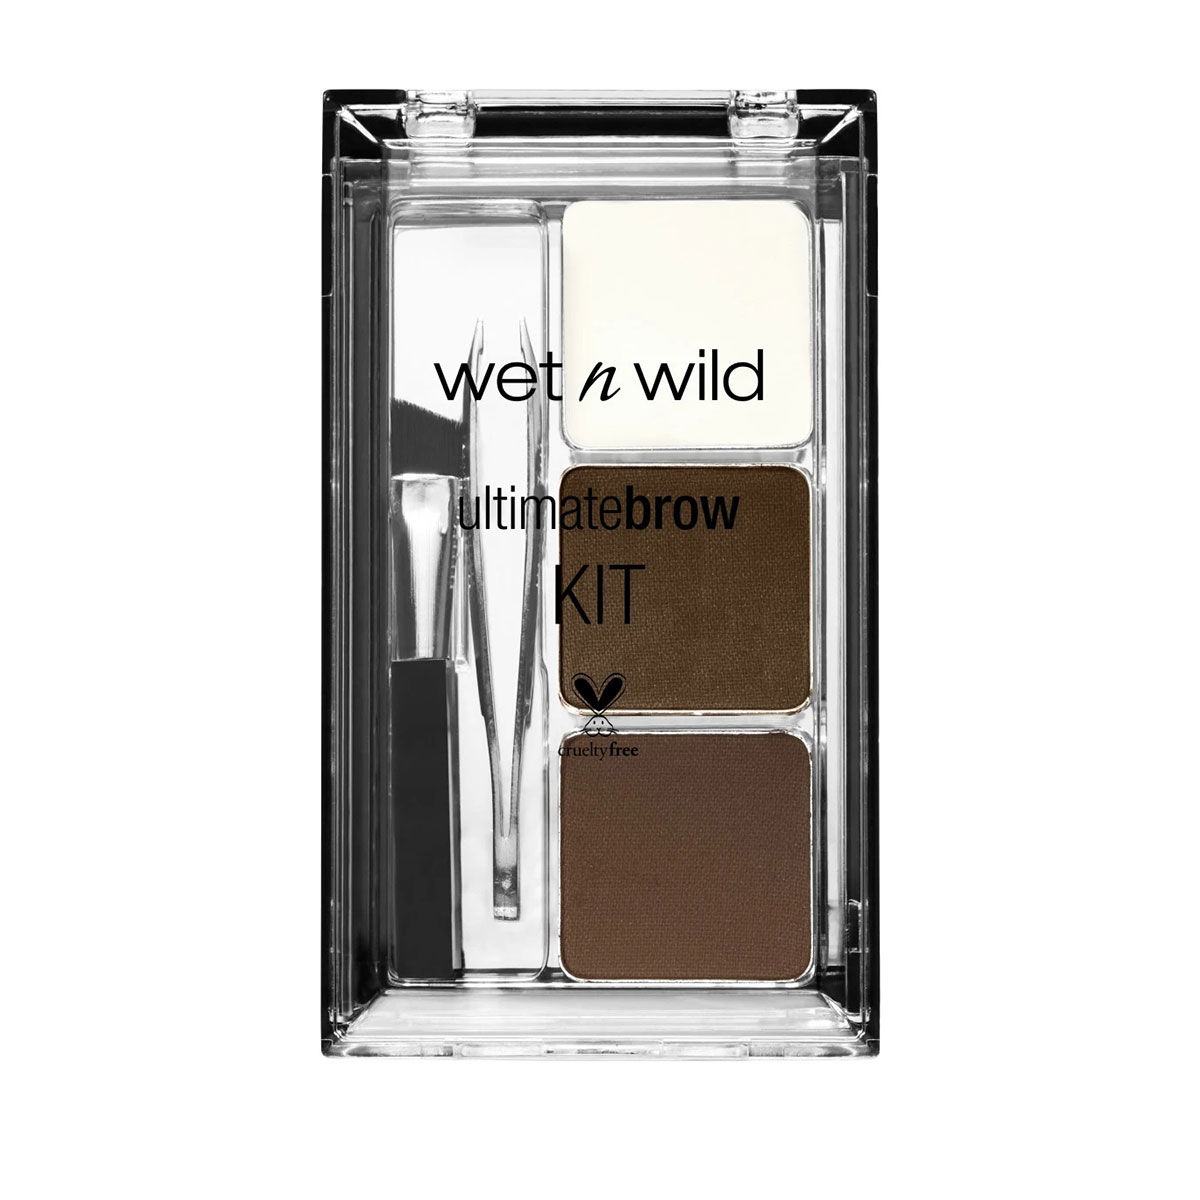 کیت ابرو آلتیمیت برا~Ultimate Brow Kit~WET N WILD